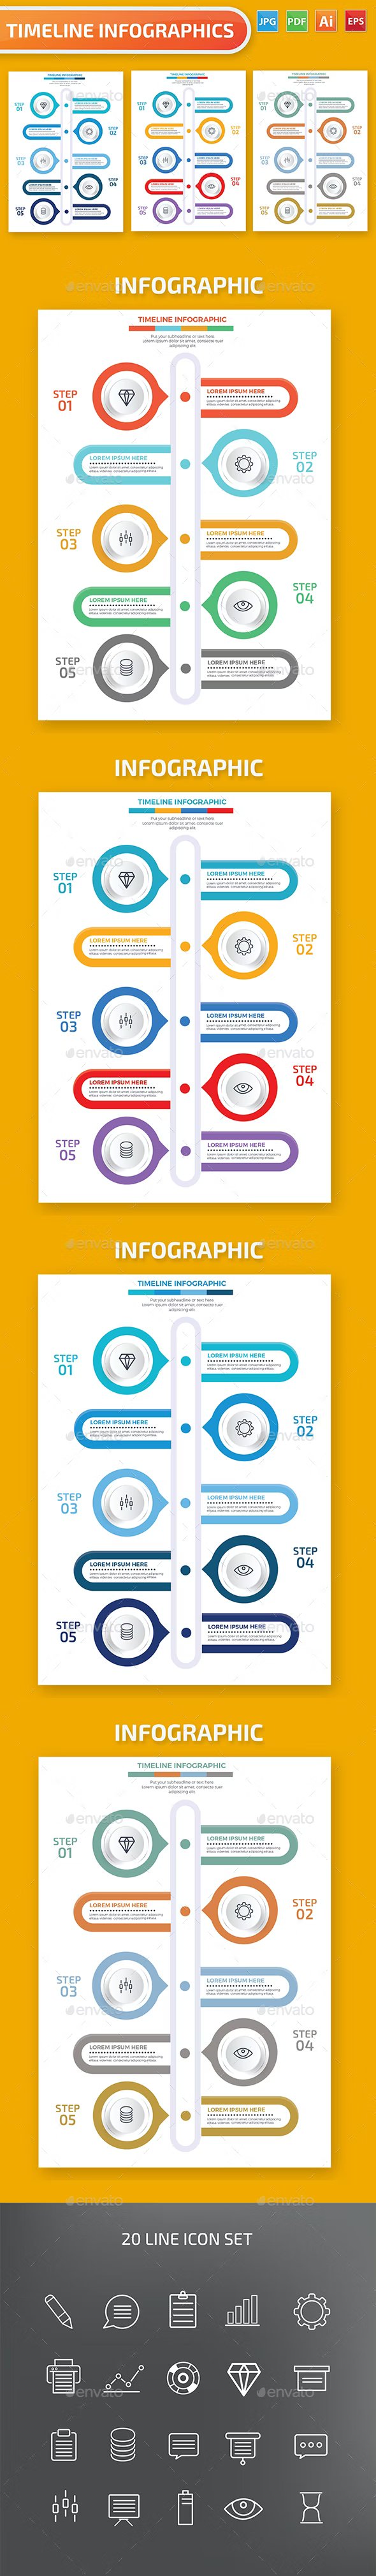 timeline infographics design 2 779